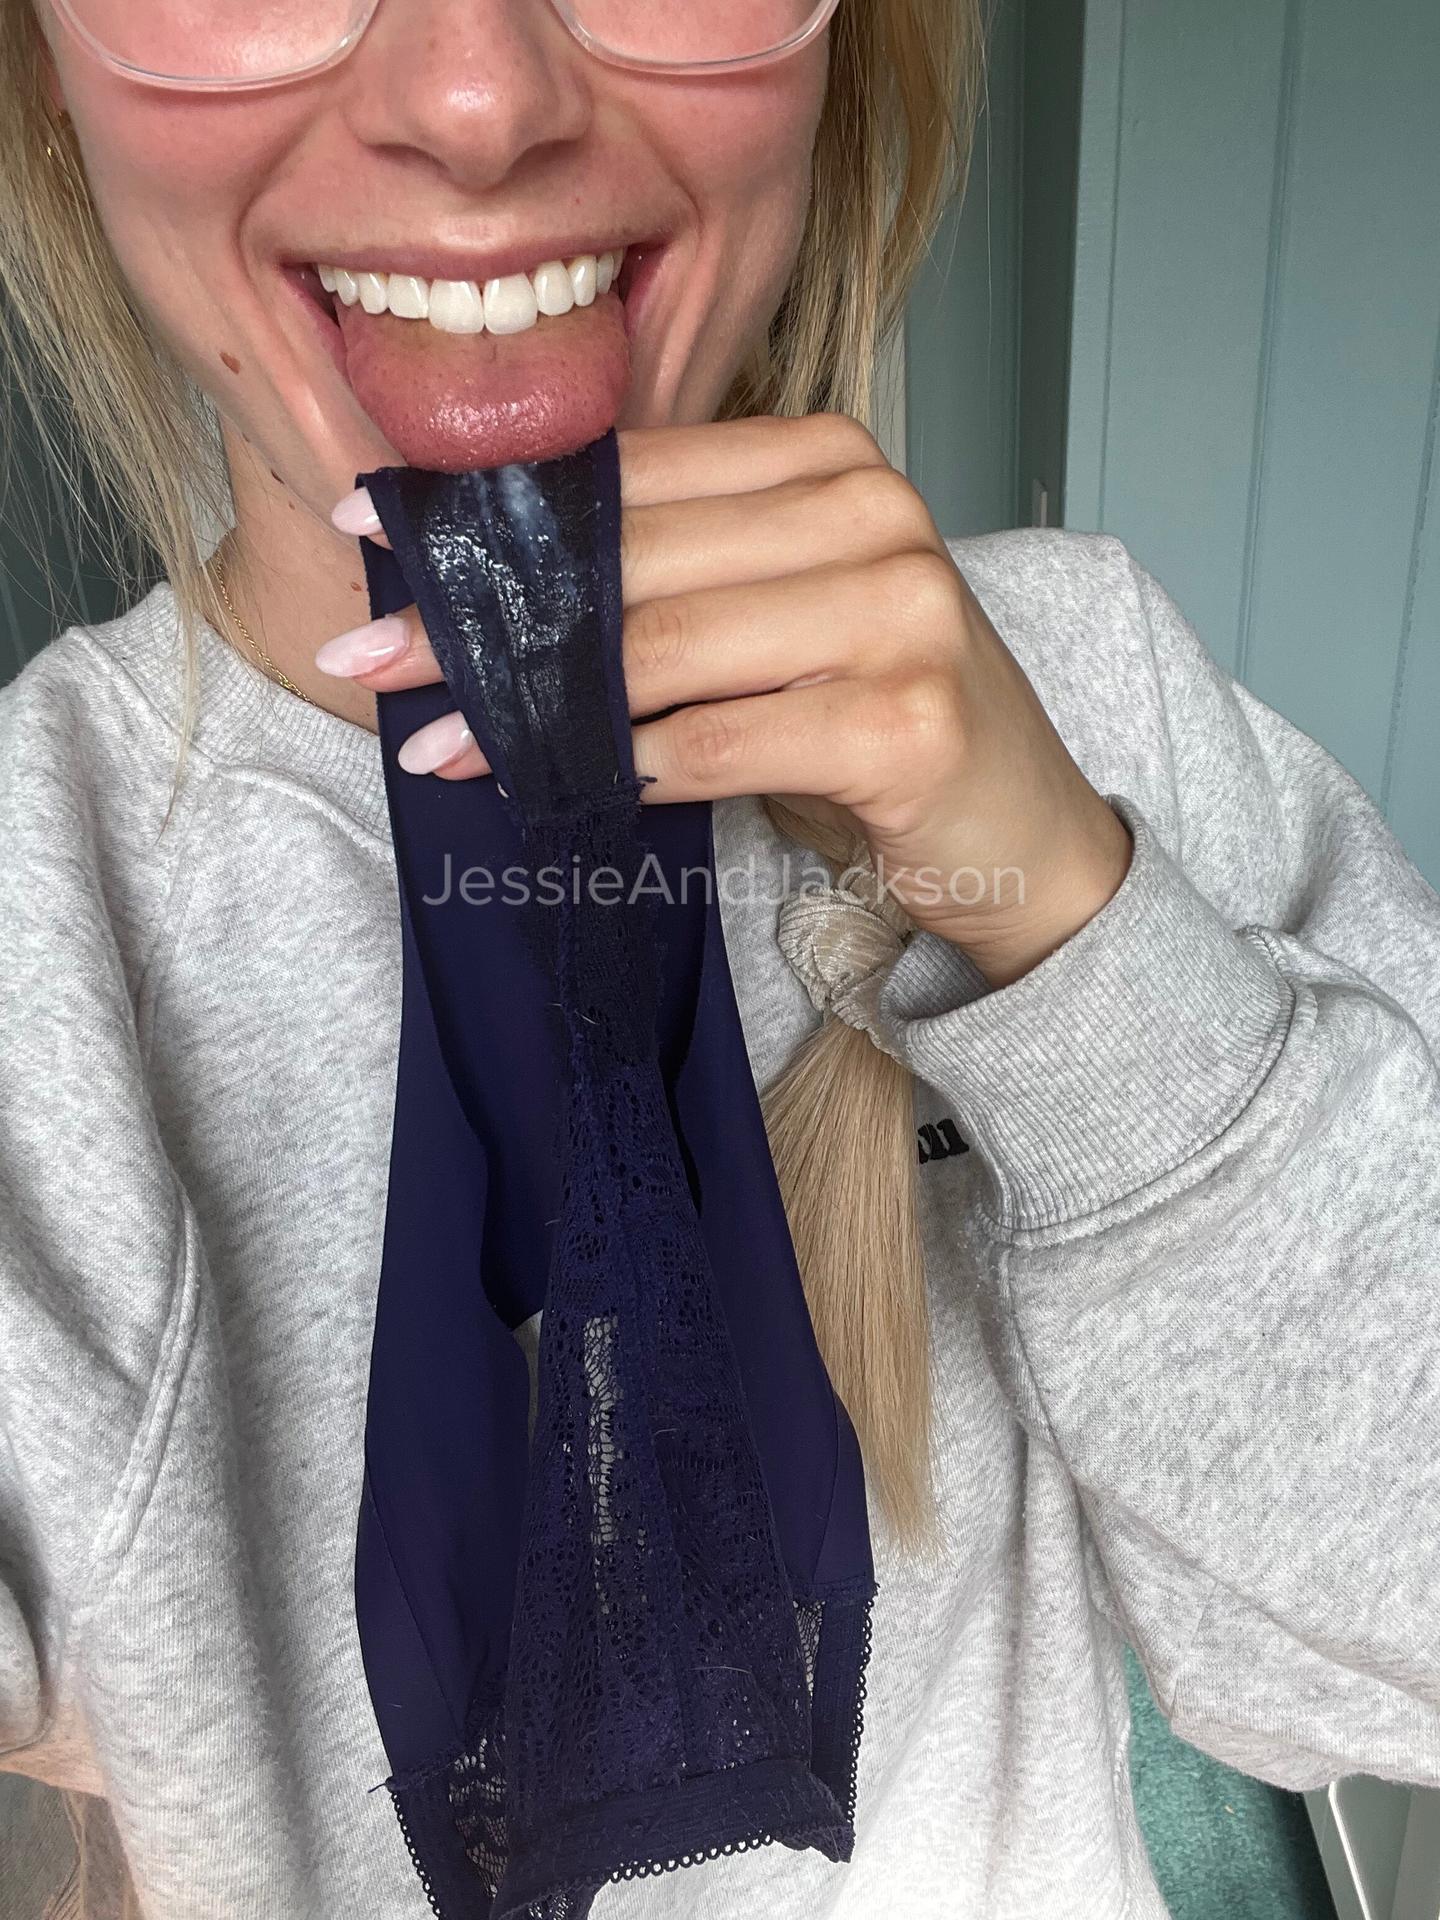 Jessie And Jackson / jessieandjackson Nude OnlyFans Leaks 1